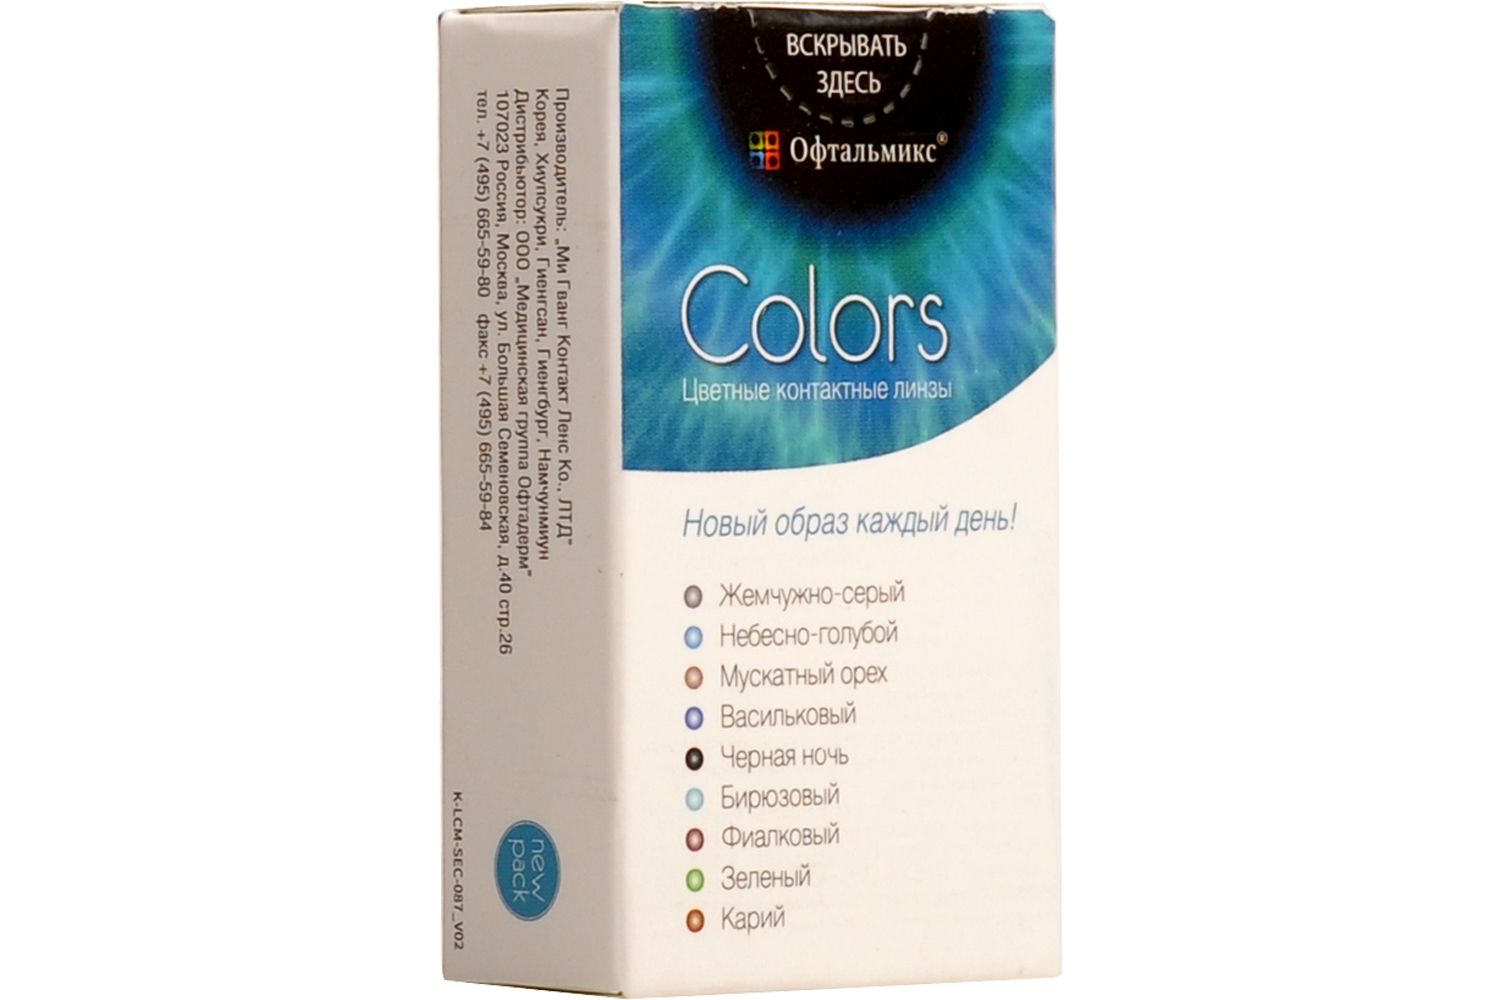 Купить Colors 2 линзы, Цветные контактные линзы Офтальмикс Colors, 2 шт. PWR -3, 50, R 8.6, Olive